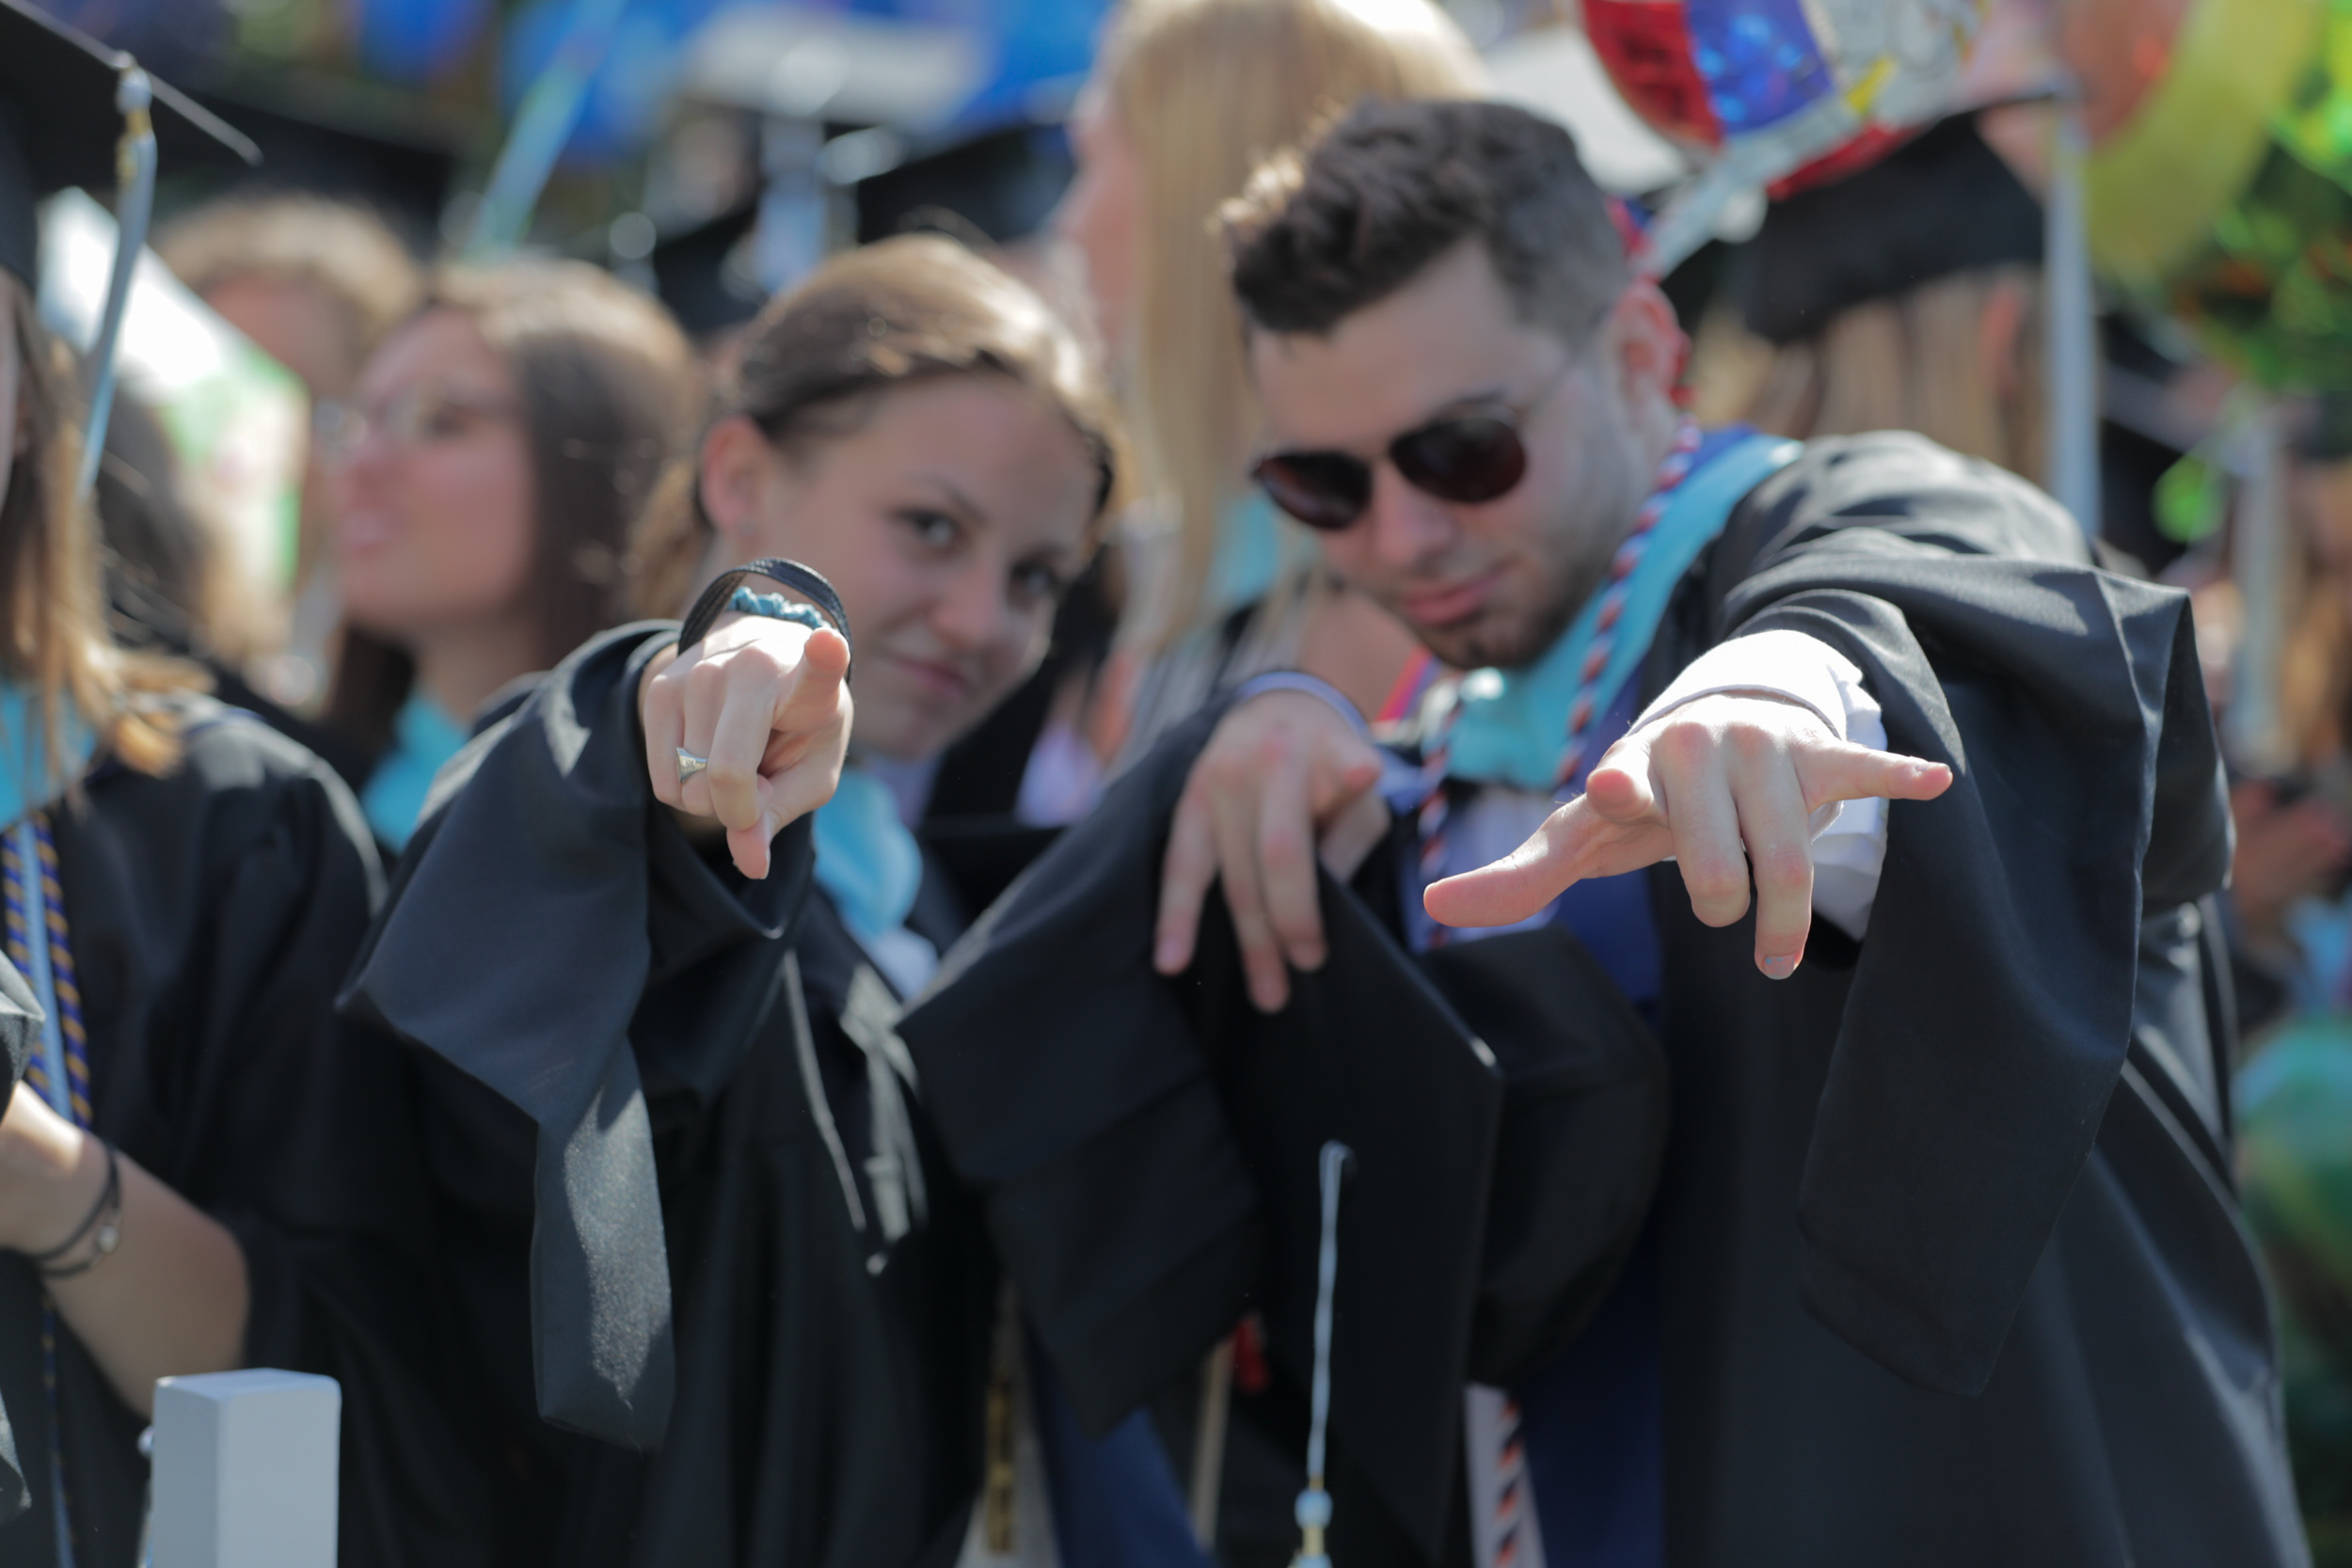 Graduates pointing at the camera